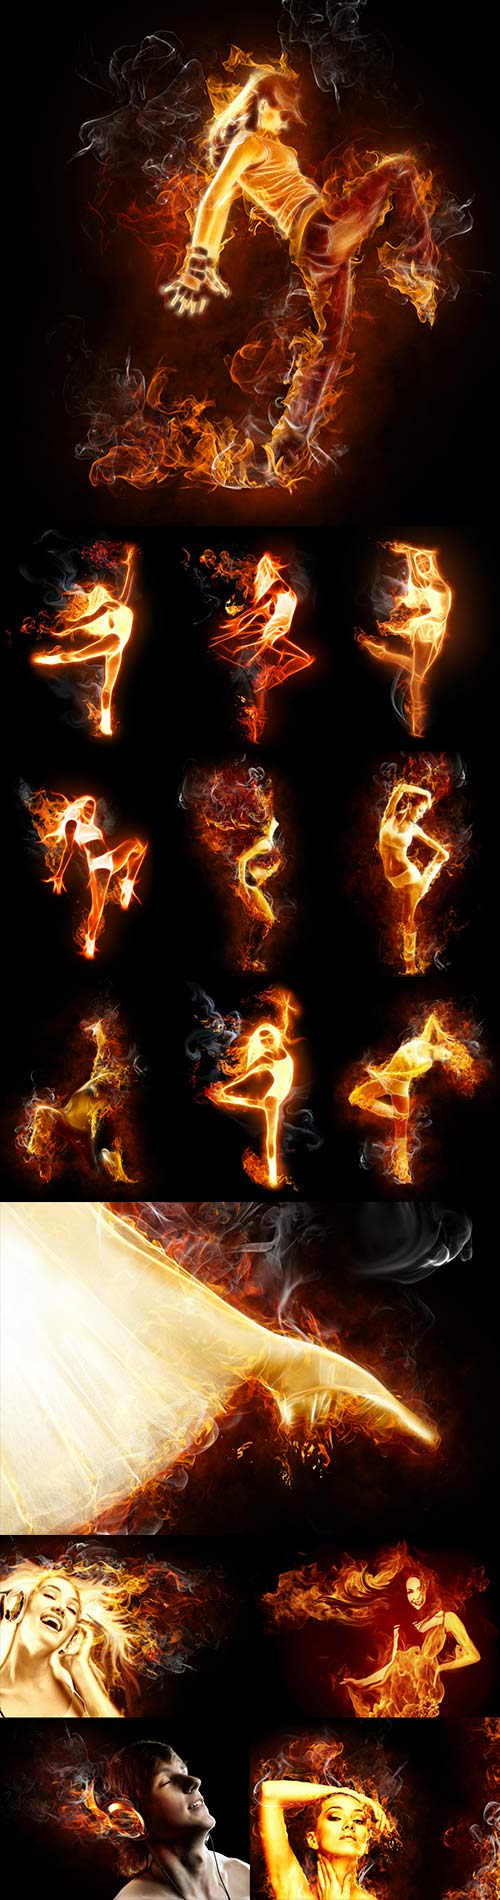 A fiery silhouette people